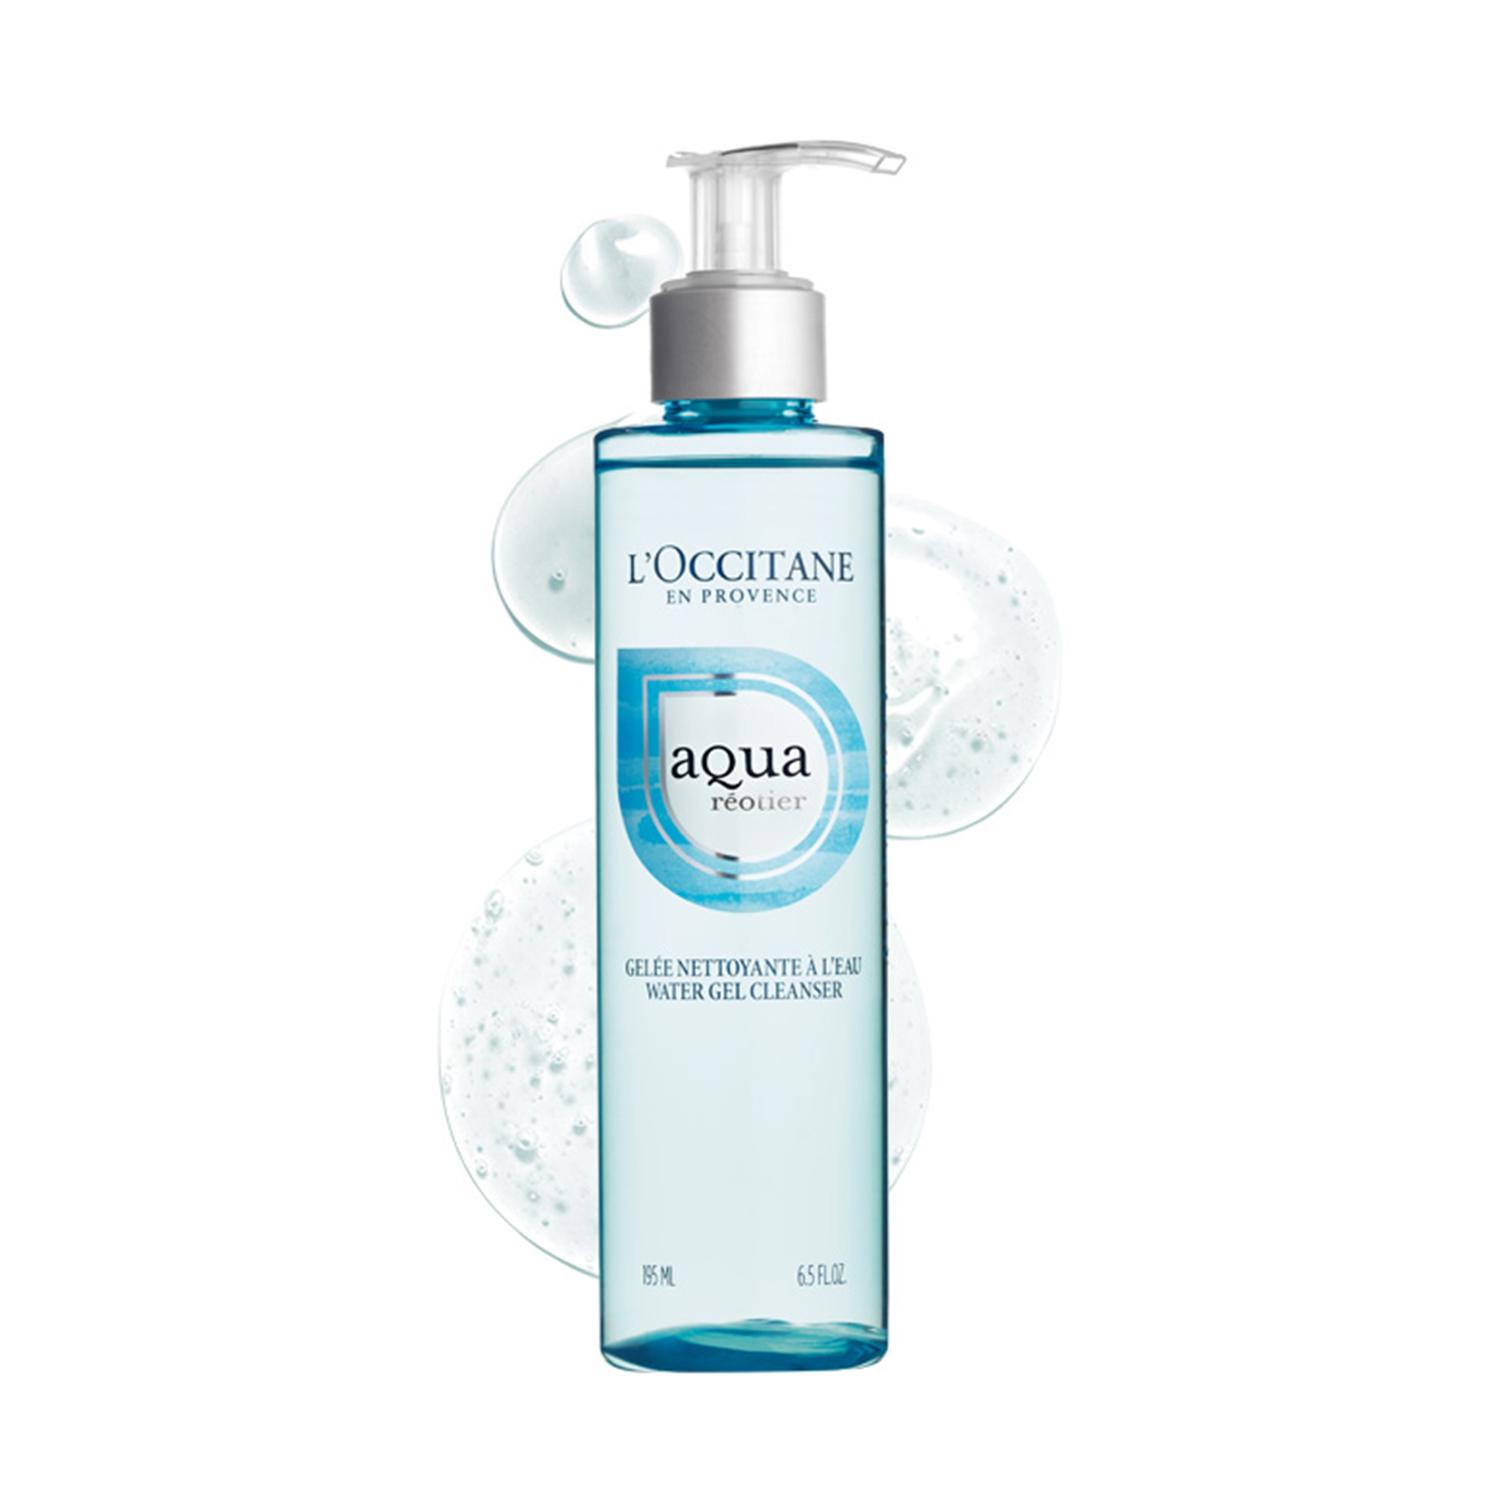 L'occitane Aqua Gel Cleanser - (195ml)